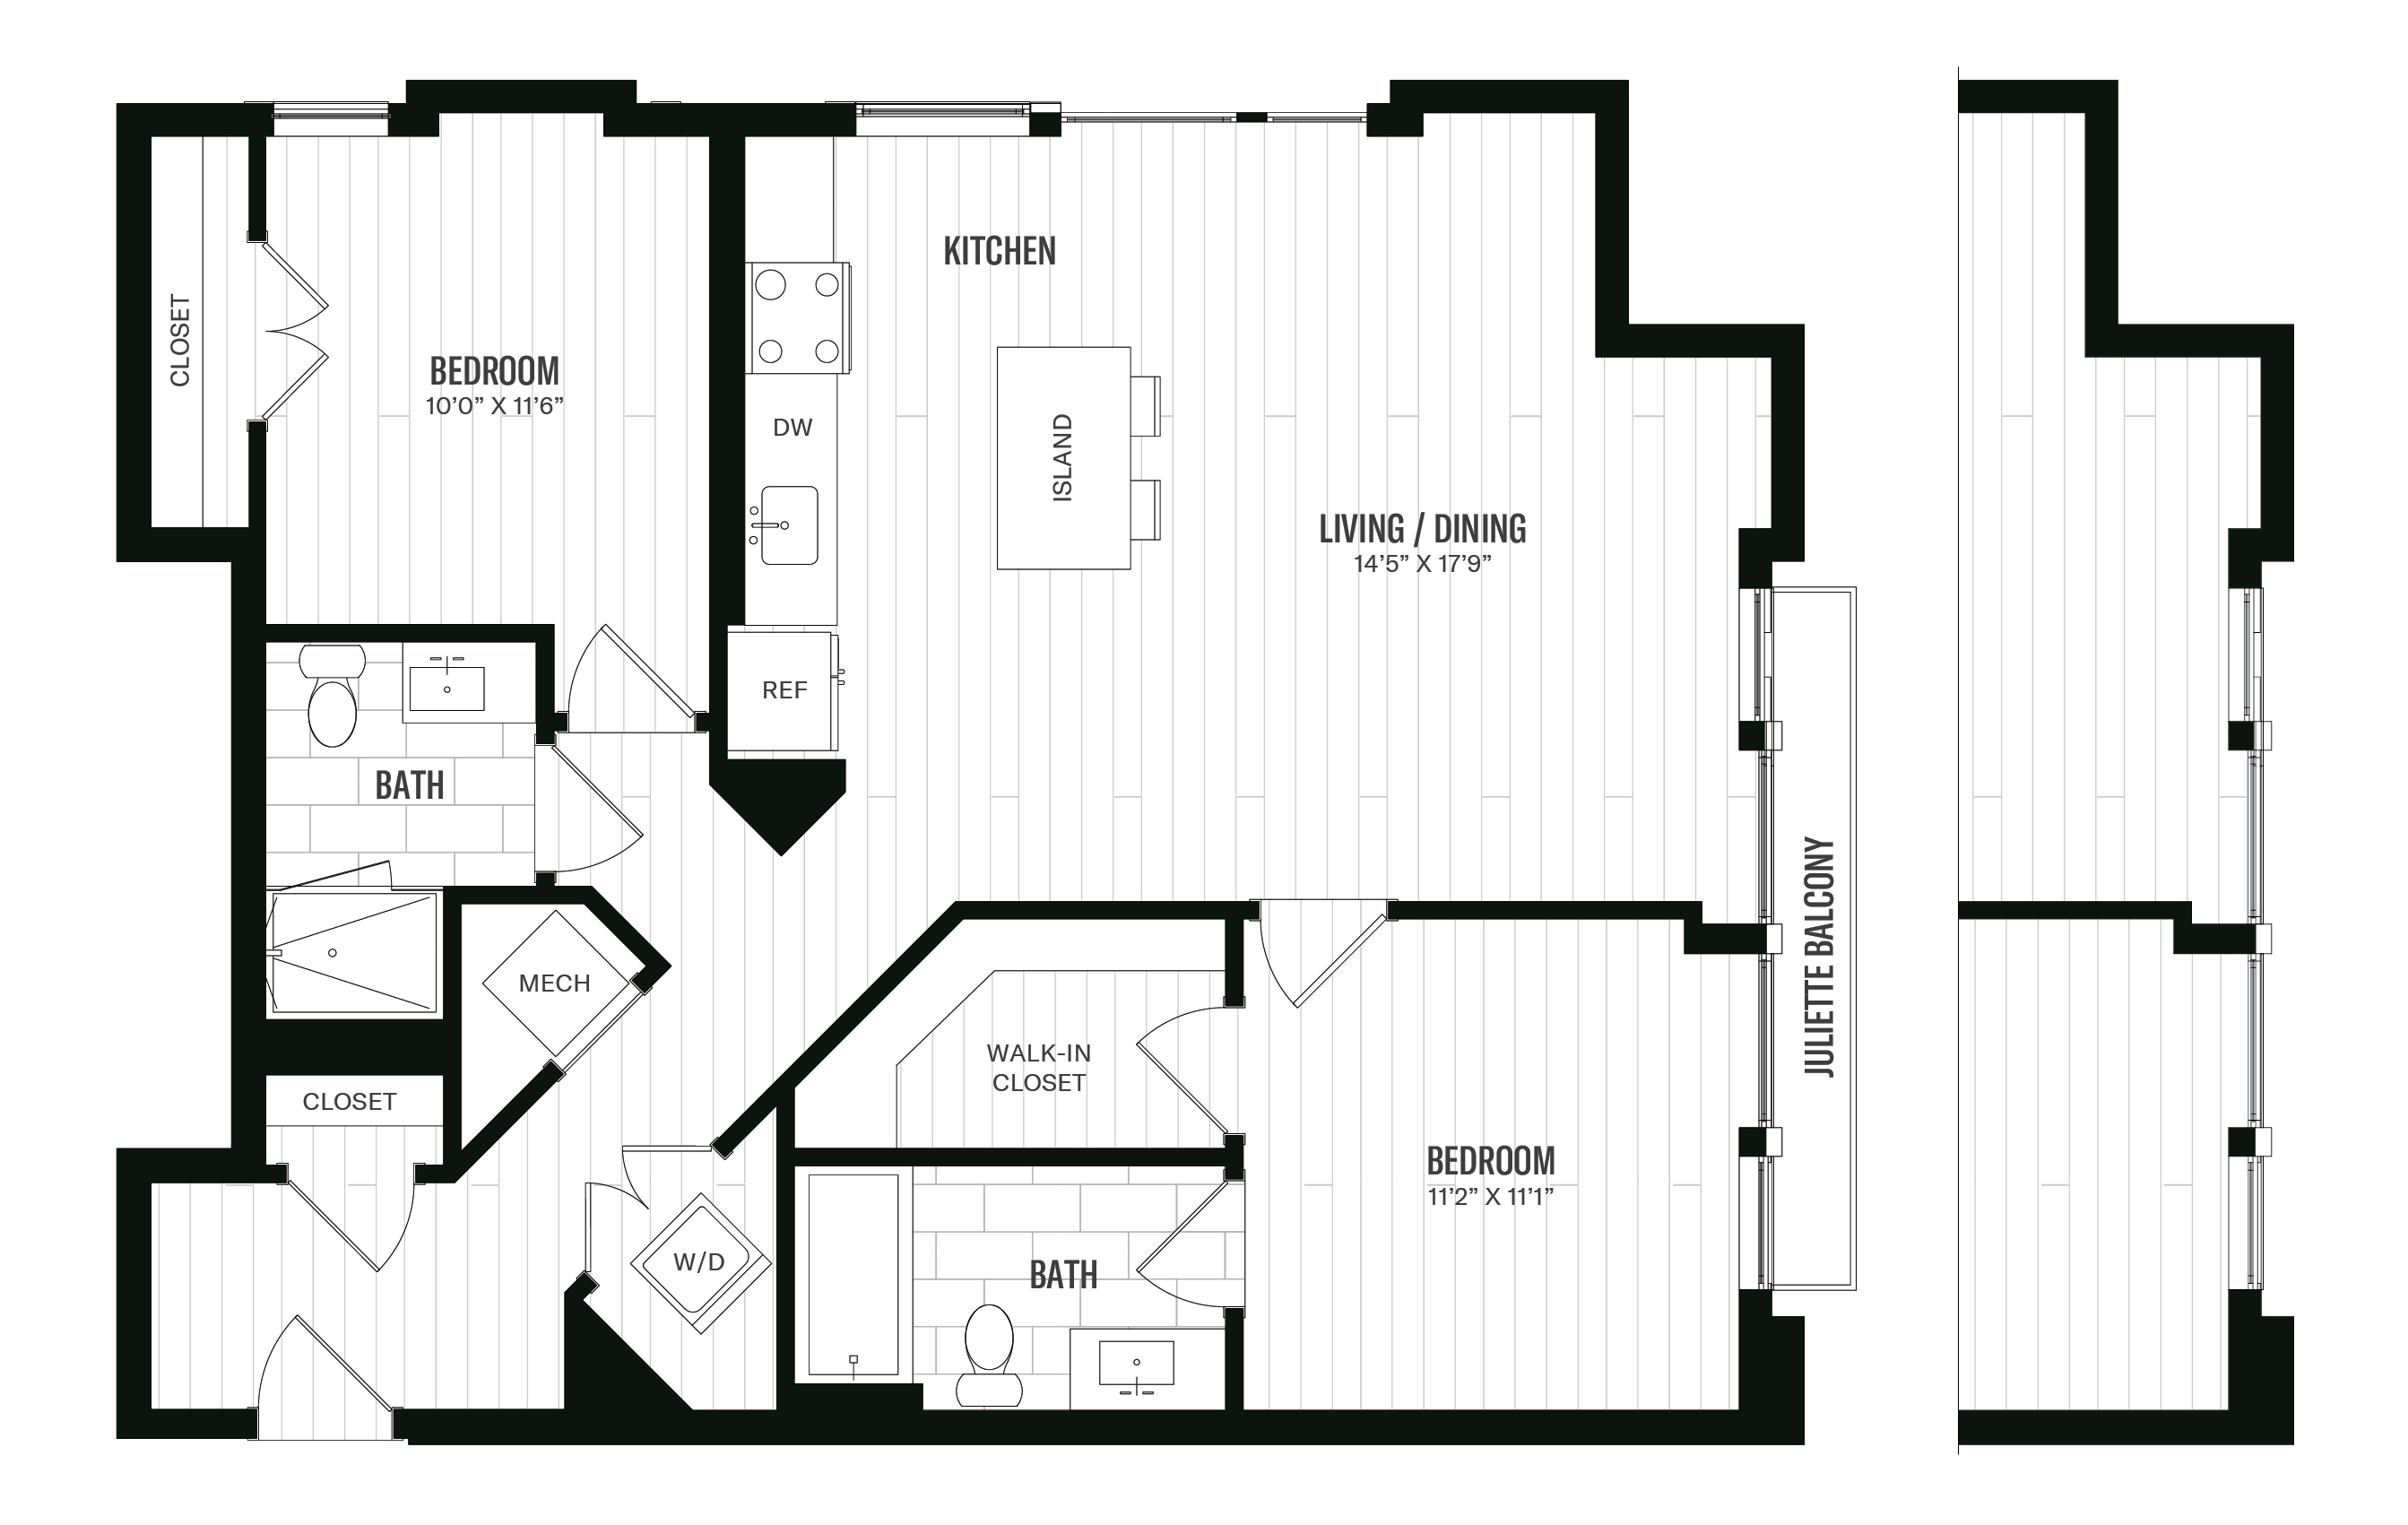 Floorplan image of unit 606